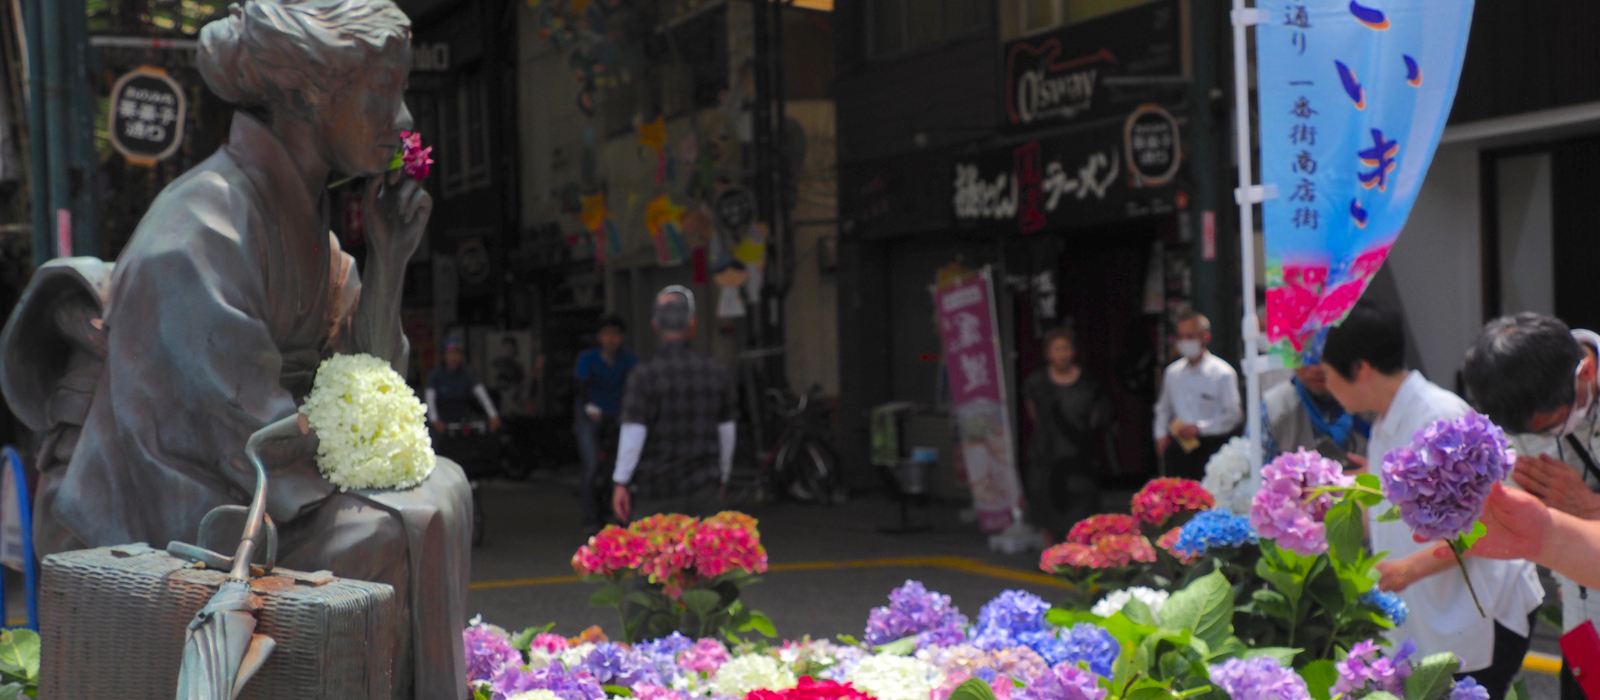 尾道ゆかりの女流作家、 林芙美子を偲ぶ「あじさいき」。6月23日に、芙美子像前で紫陽花の献花をはじめ、様々な催しがあります。